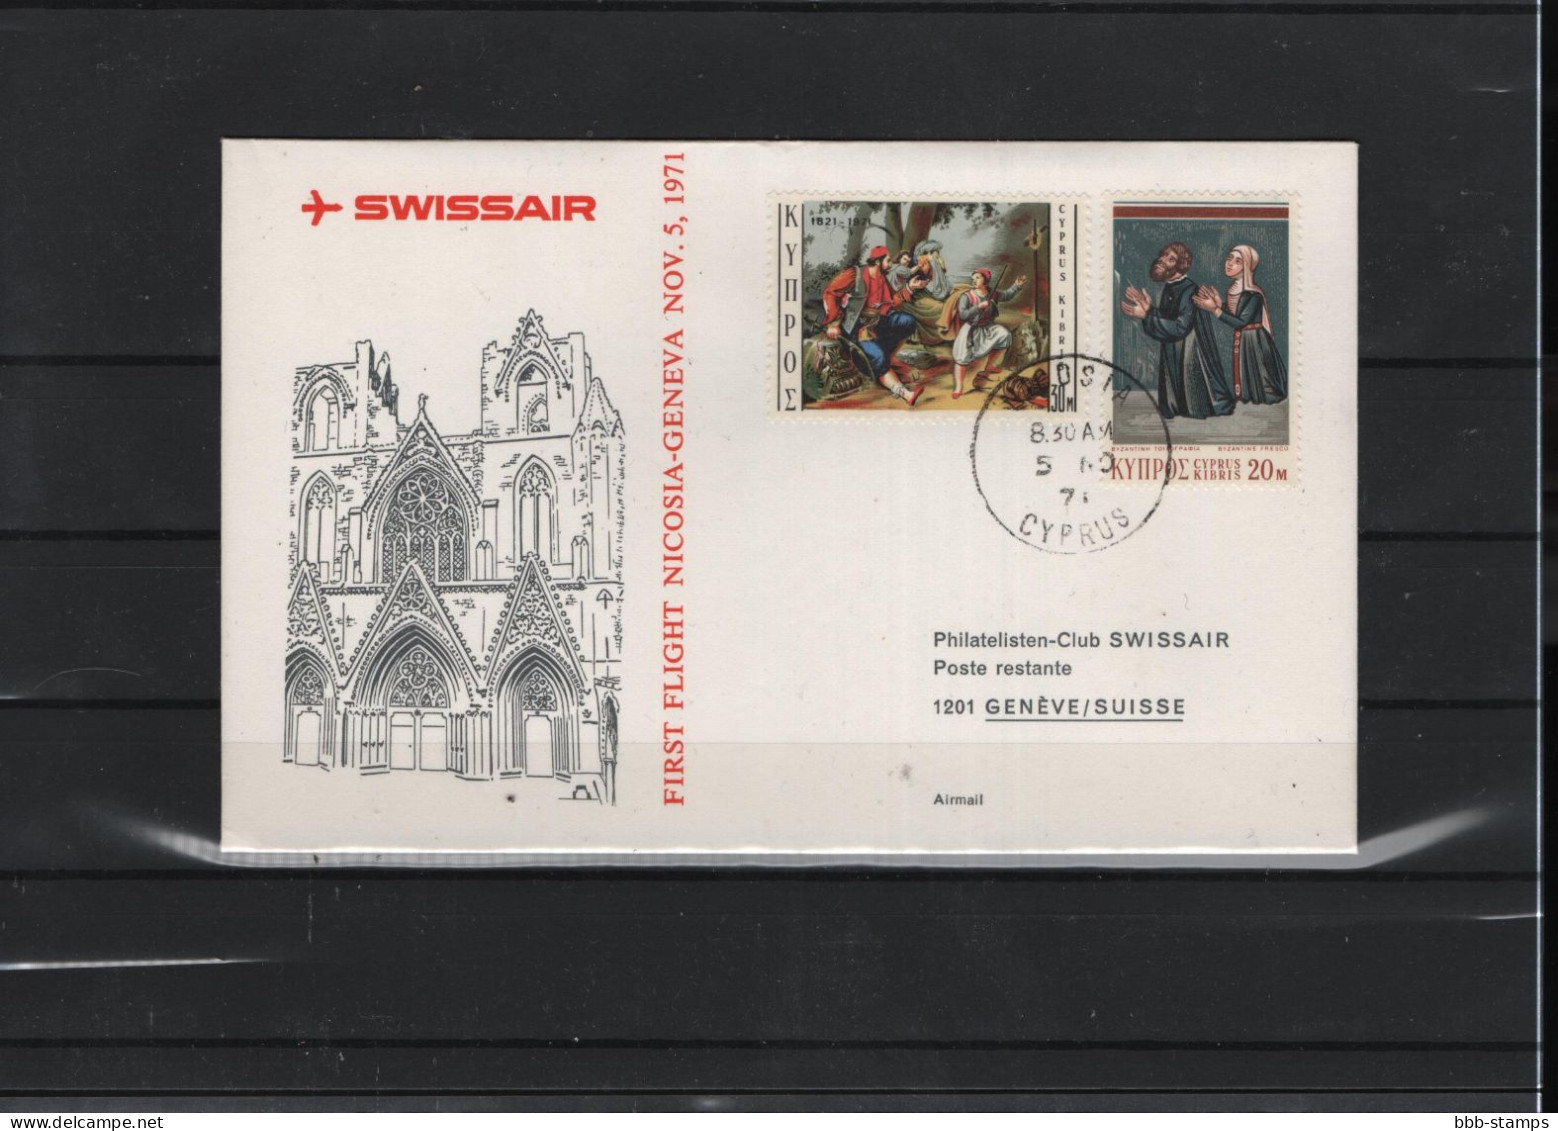 Schweiz Luftpost FFC Swissair  5.11.1971 - Premiers Vols